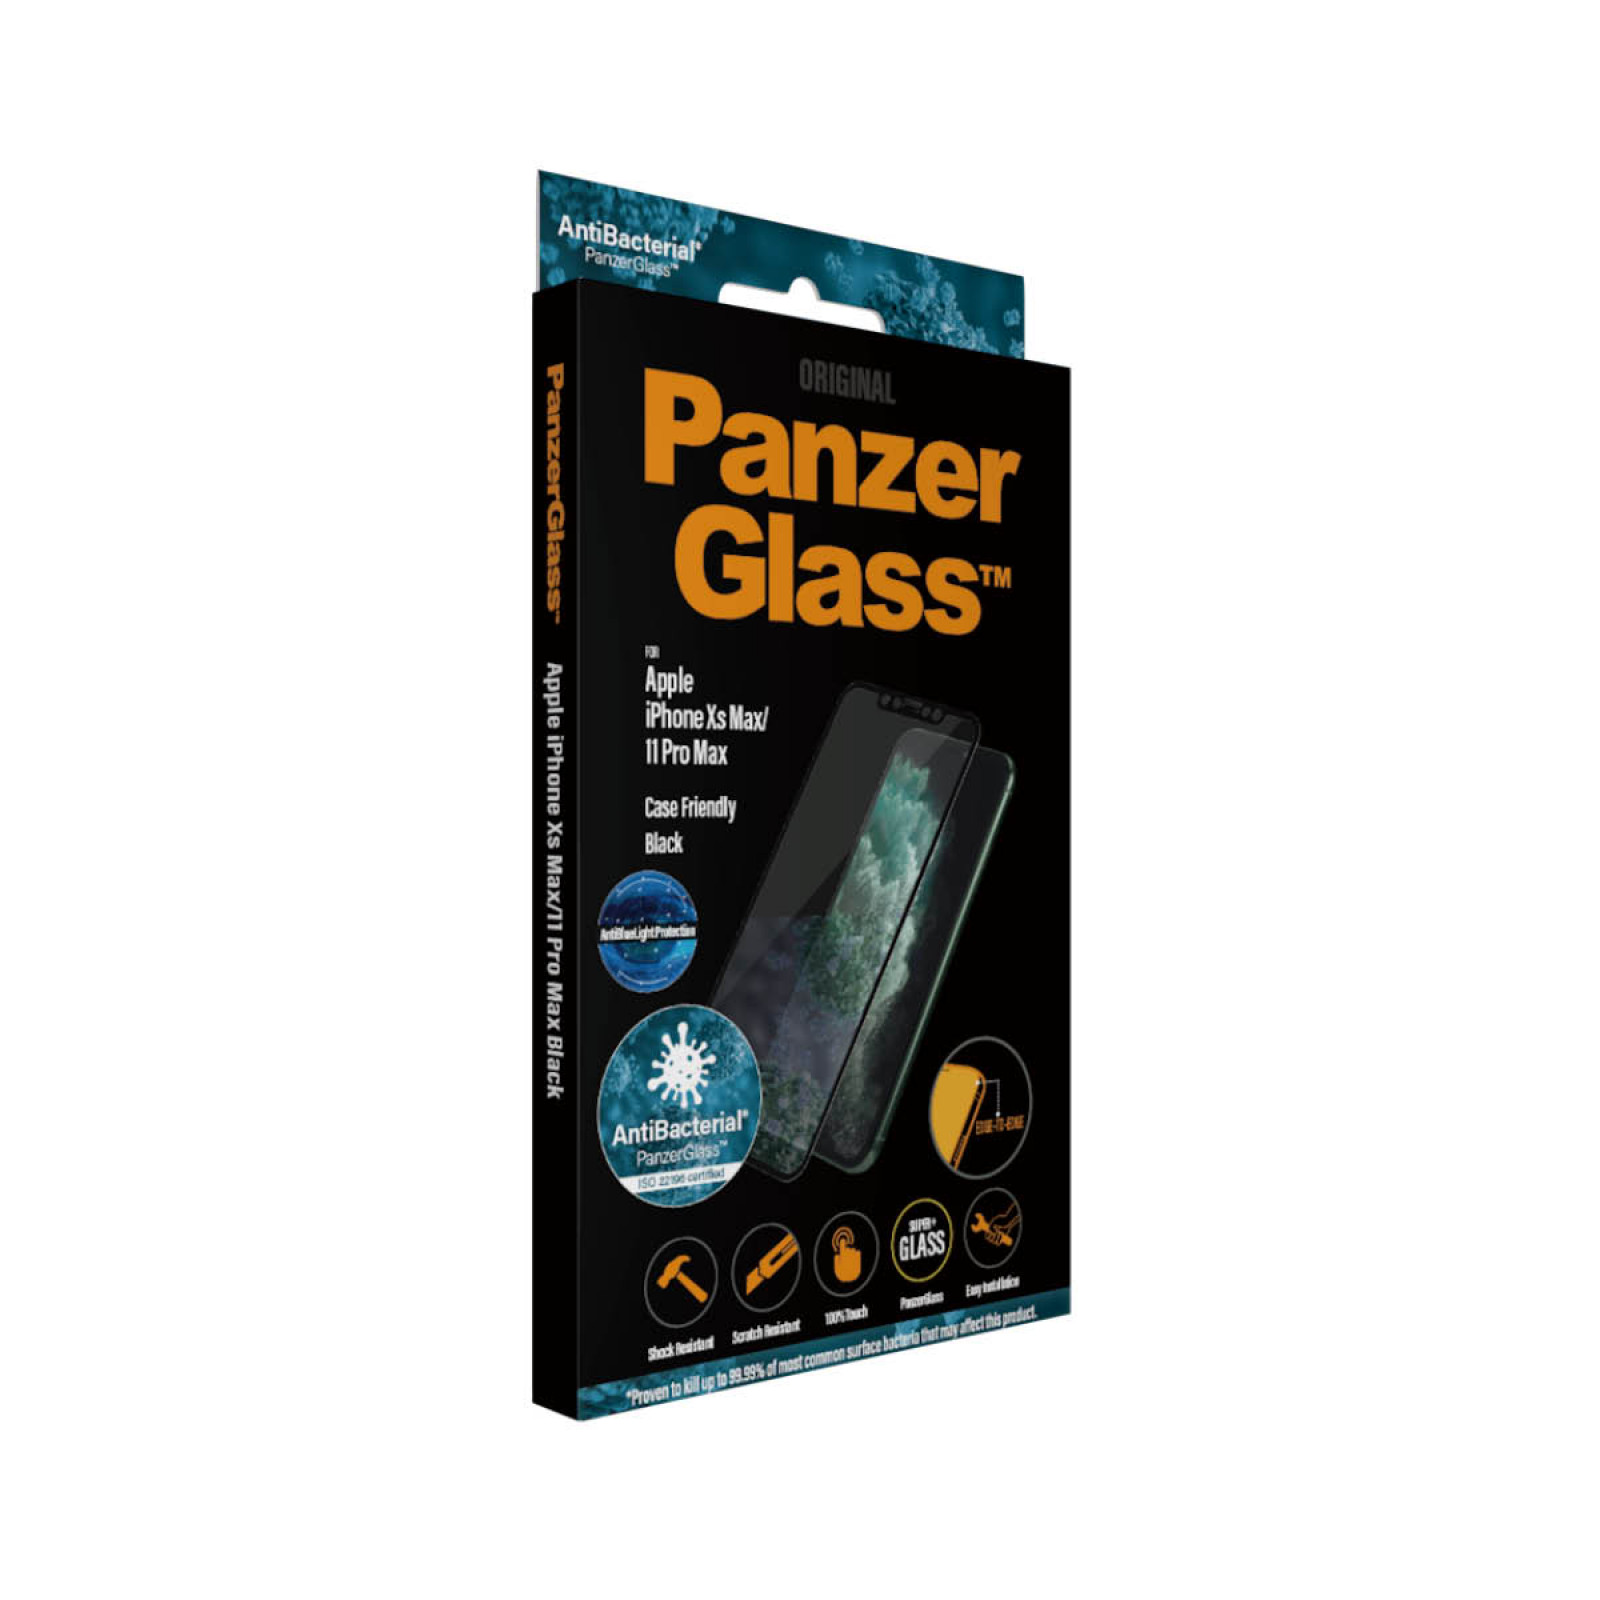 Стъклен протектор PanzerGlass за Apple Iphone Xs Max/11 Pro Max AntiBlueLight, AntiBacterial CaseFriendly, Black